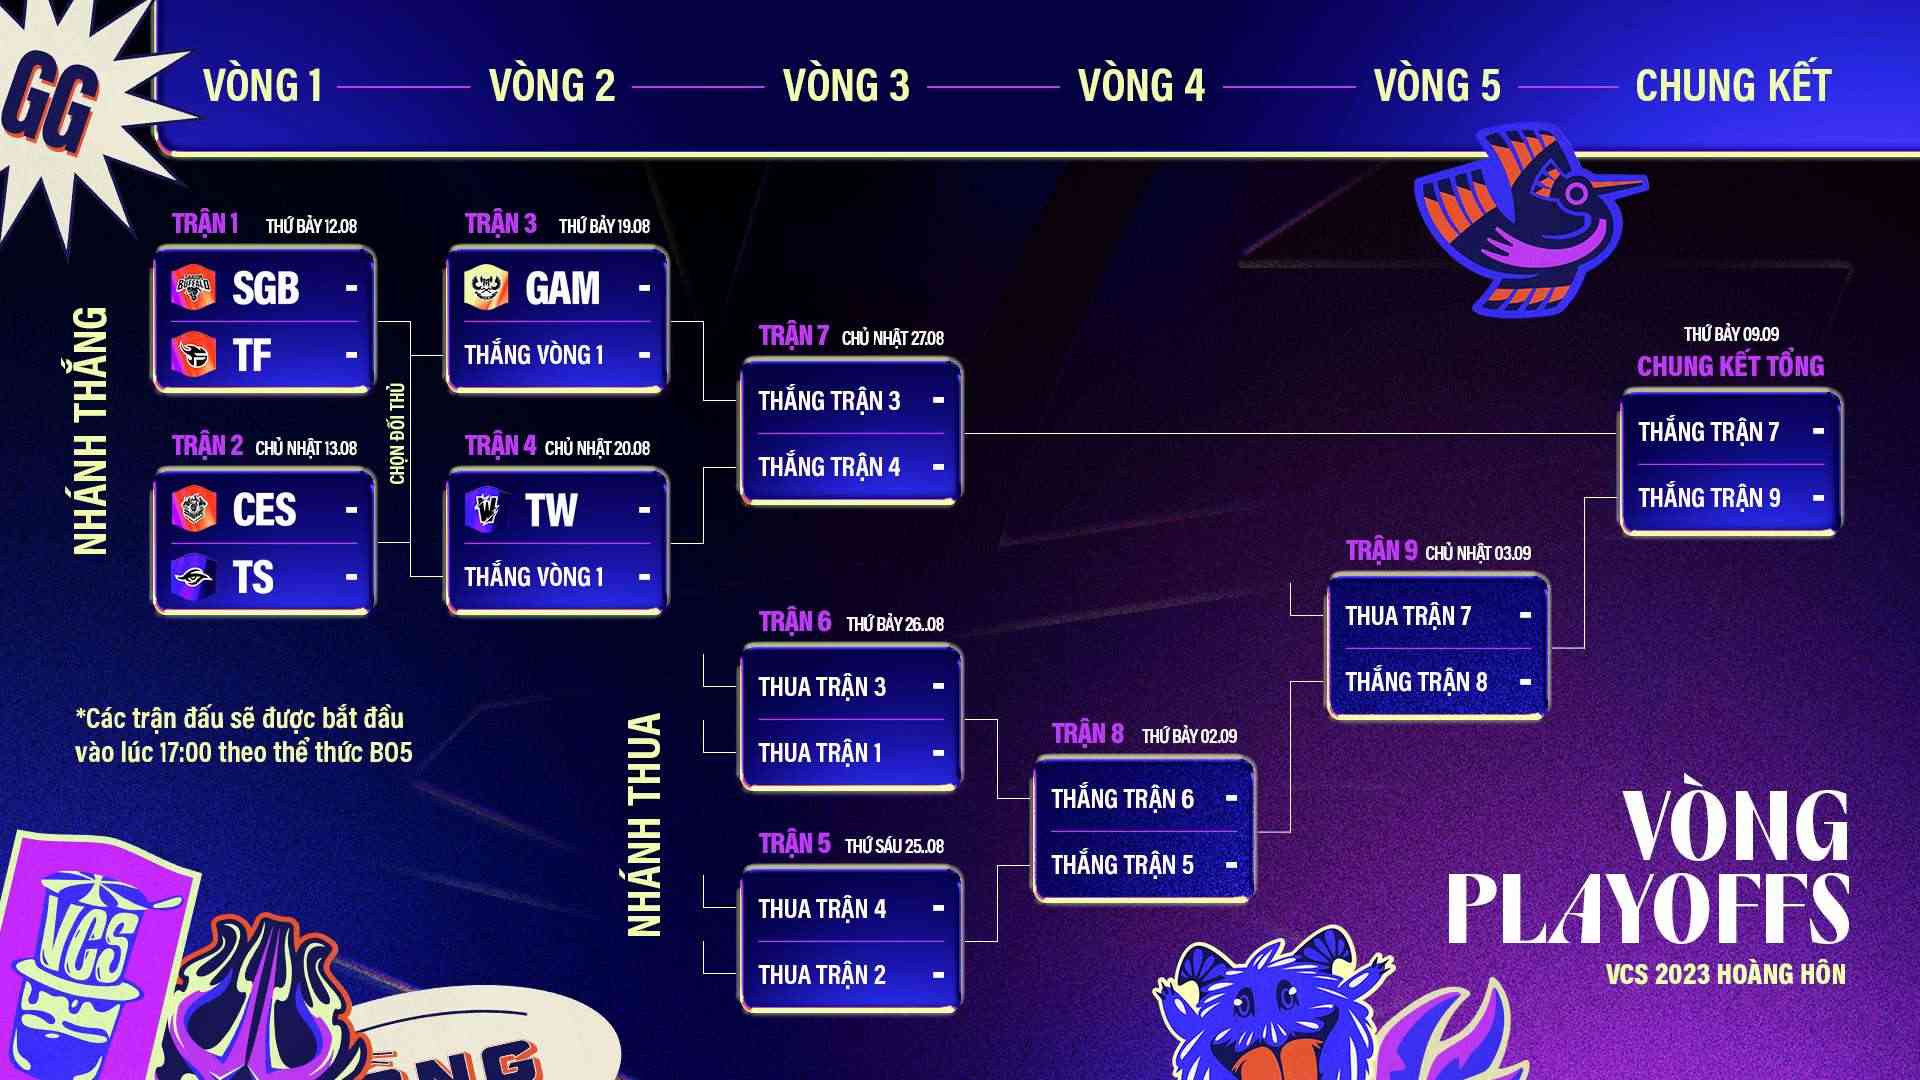 Để lên ngôi vô địch VCS 2023 Hoàng Hôn, các đội tuyển cần phải thắng ít nhất 3 trận BO5 tại Vòng Playoffs.